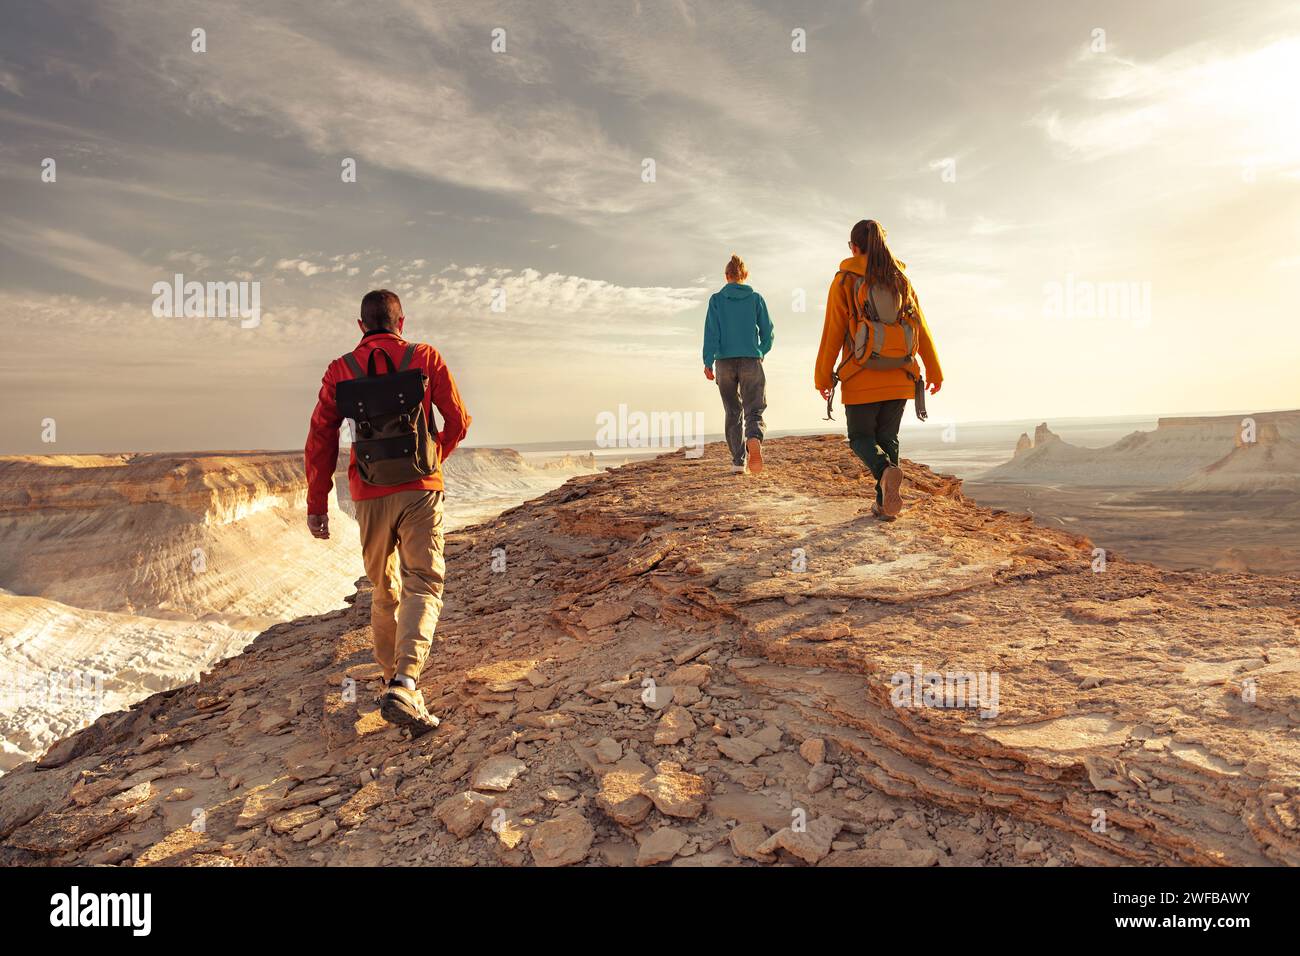 Drei junge Touristen mit Rucksäcken laufen auf dem Sonnenuntergang Berggipfel mit fantastischer Aussicht Stockfoto